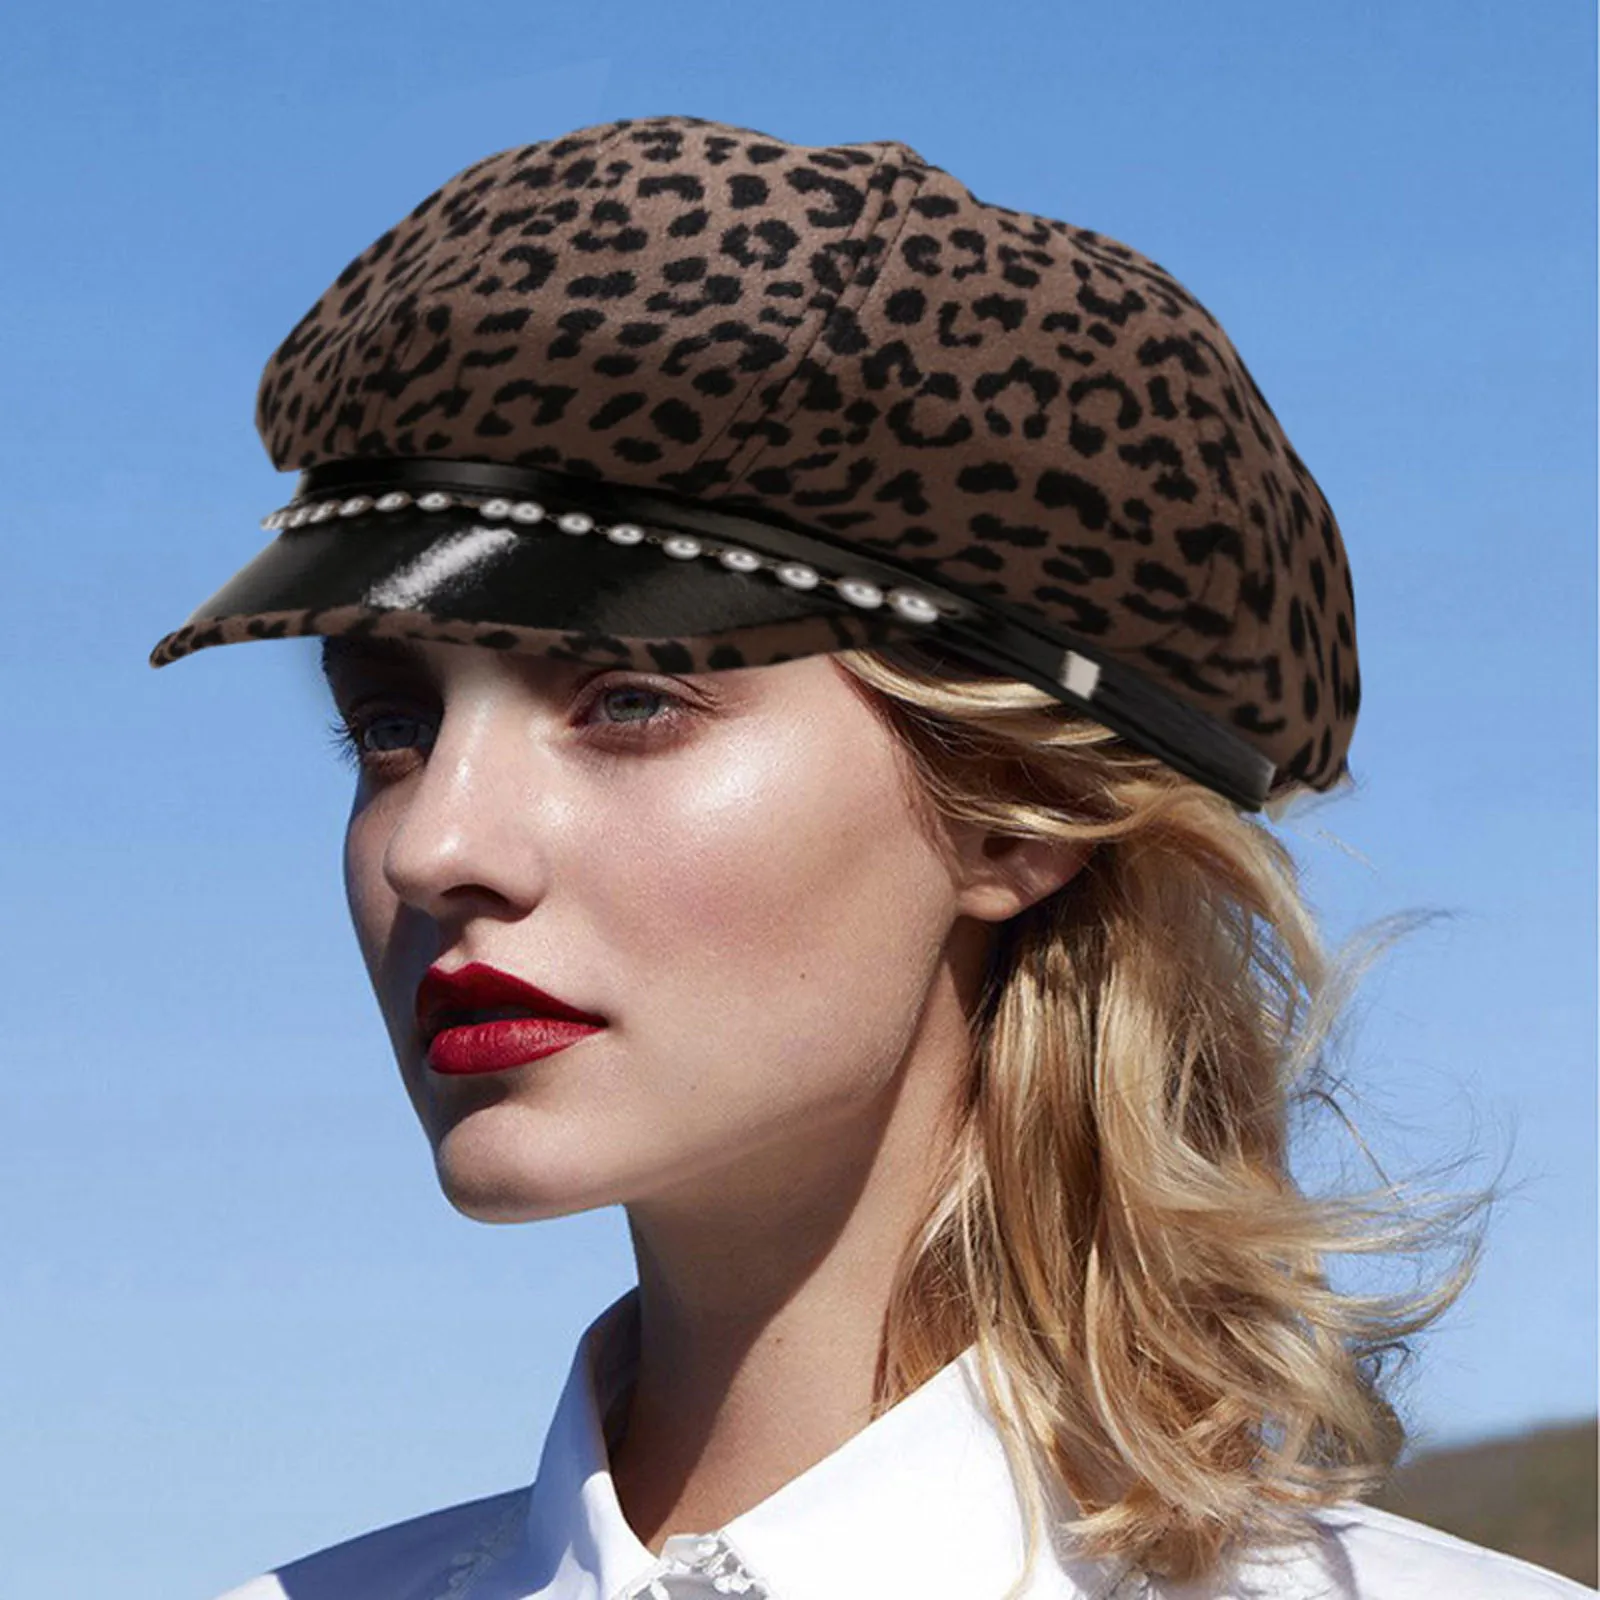 Ottekantet Hat Efterår Og Vinter Leopard Hat Uldne Beret Perler Cap Fashion Kvinder Hat Navy Hatte Piger Beret Hat Dame Slouchy Hatte